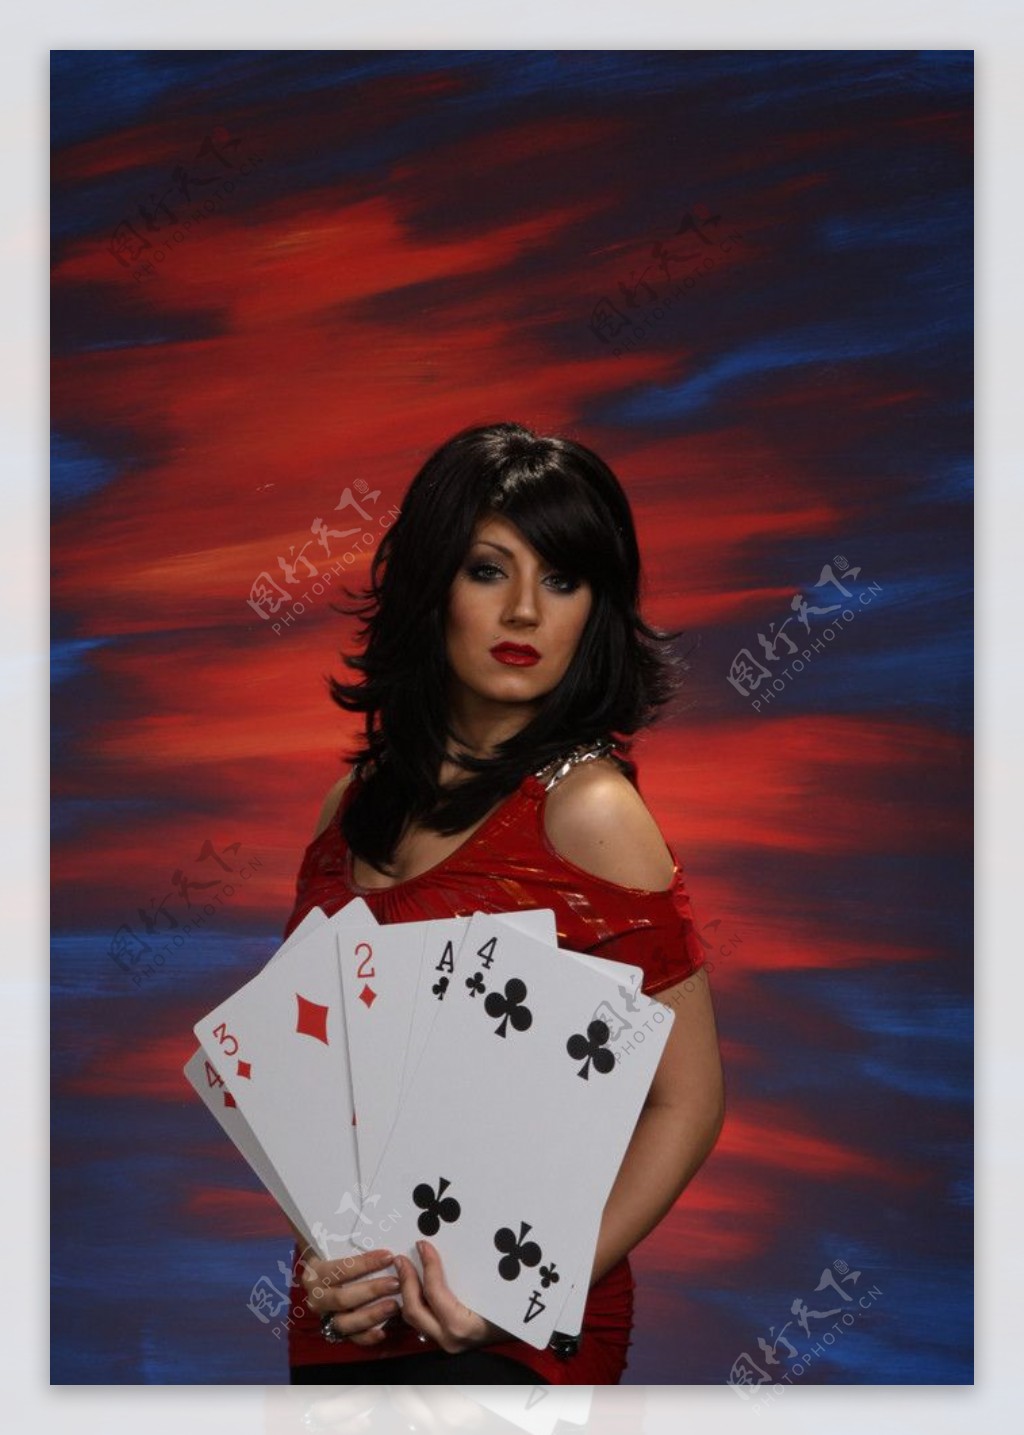 拿着大型扑克的美女魔术师图片